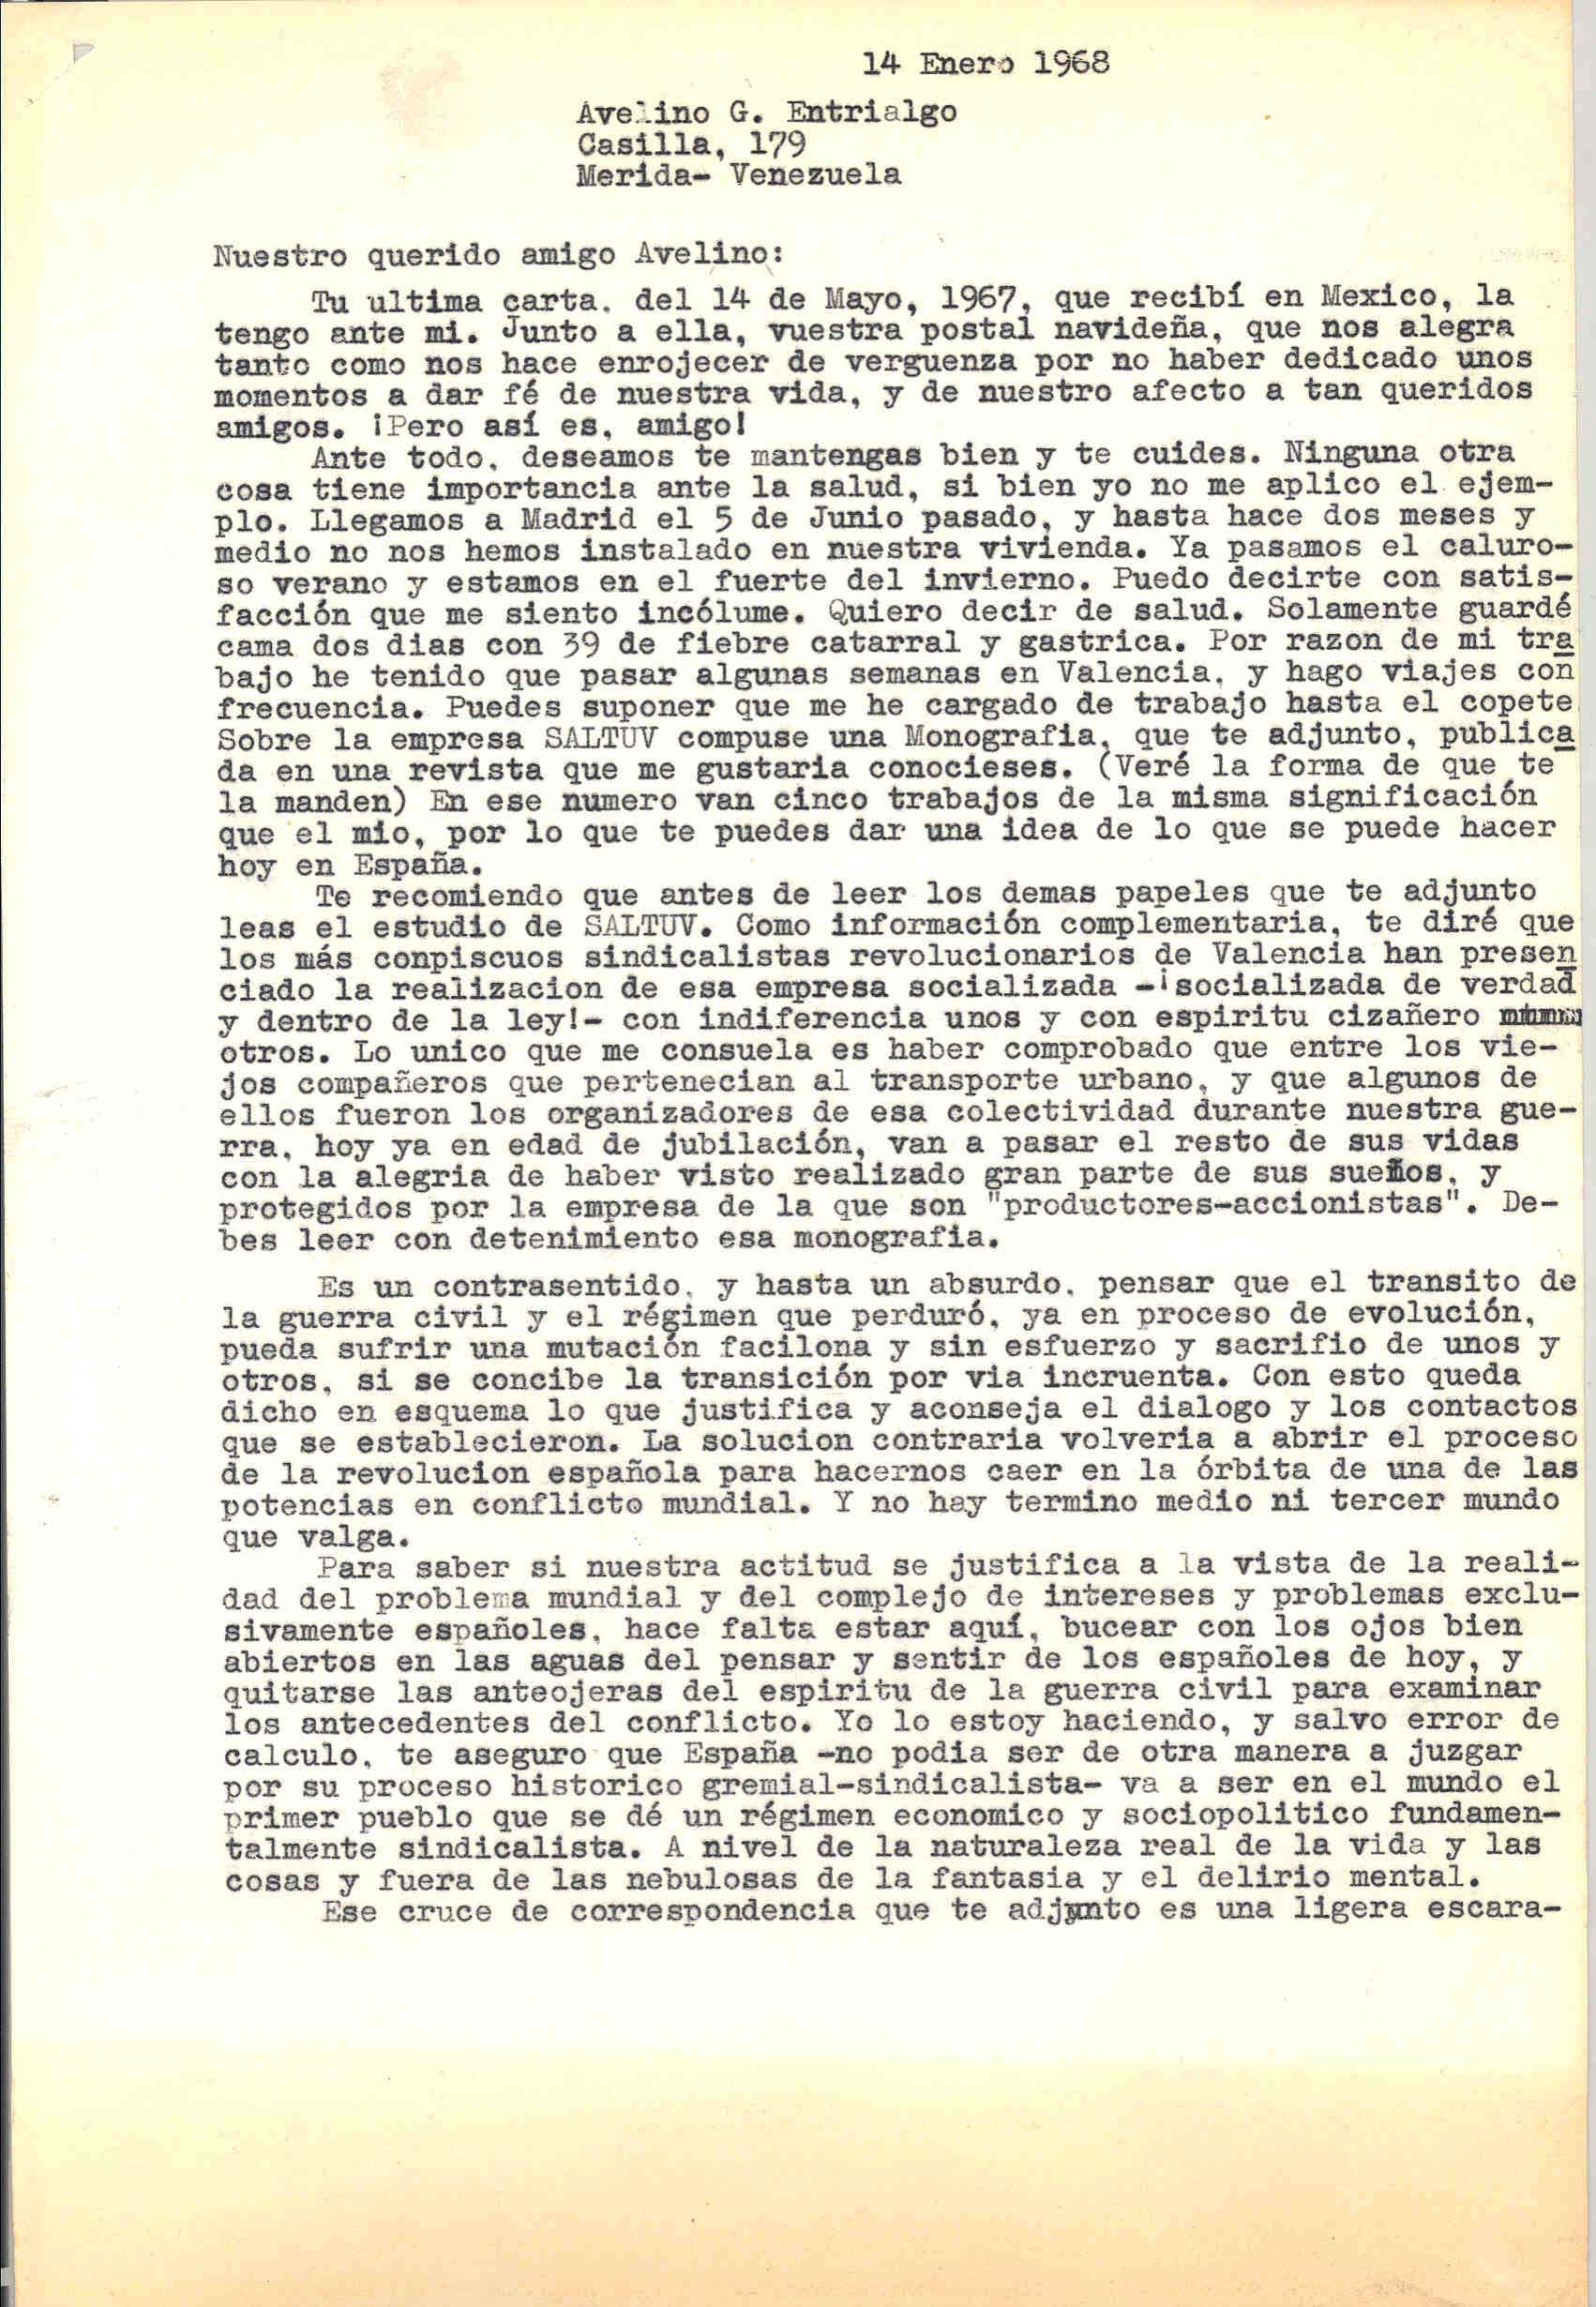 Carta a Avelino González Entrialgo sobre los trabajos y la memoria de Saltuv, realizadas por Juan López y sobre la transición y el diálogo.